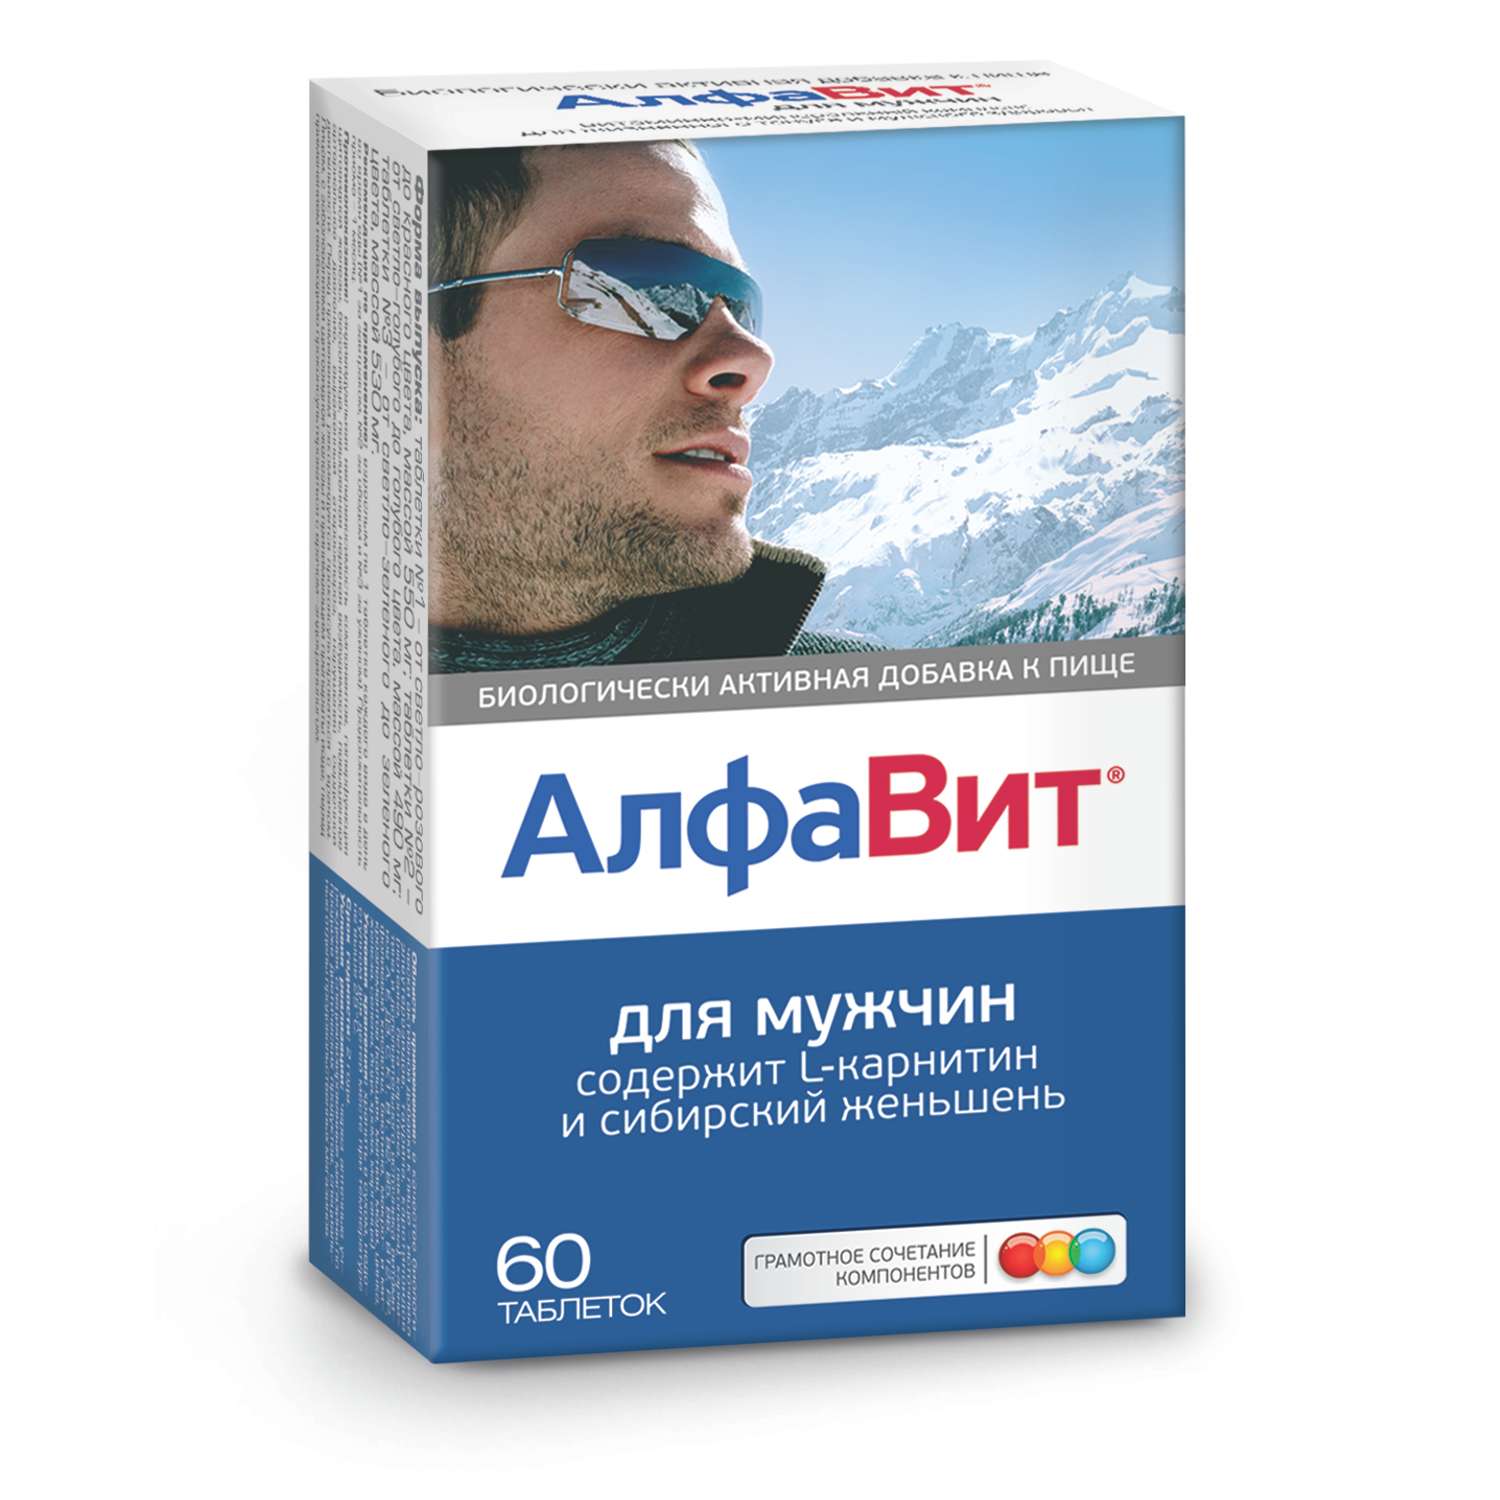 Комплекс витаминов Алфавит для мужчин таблетки 60шт - фото 2